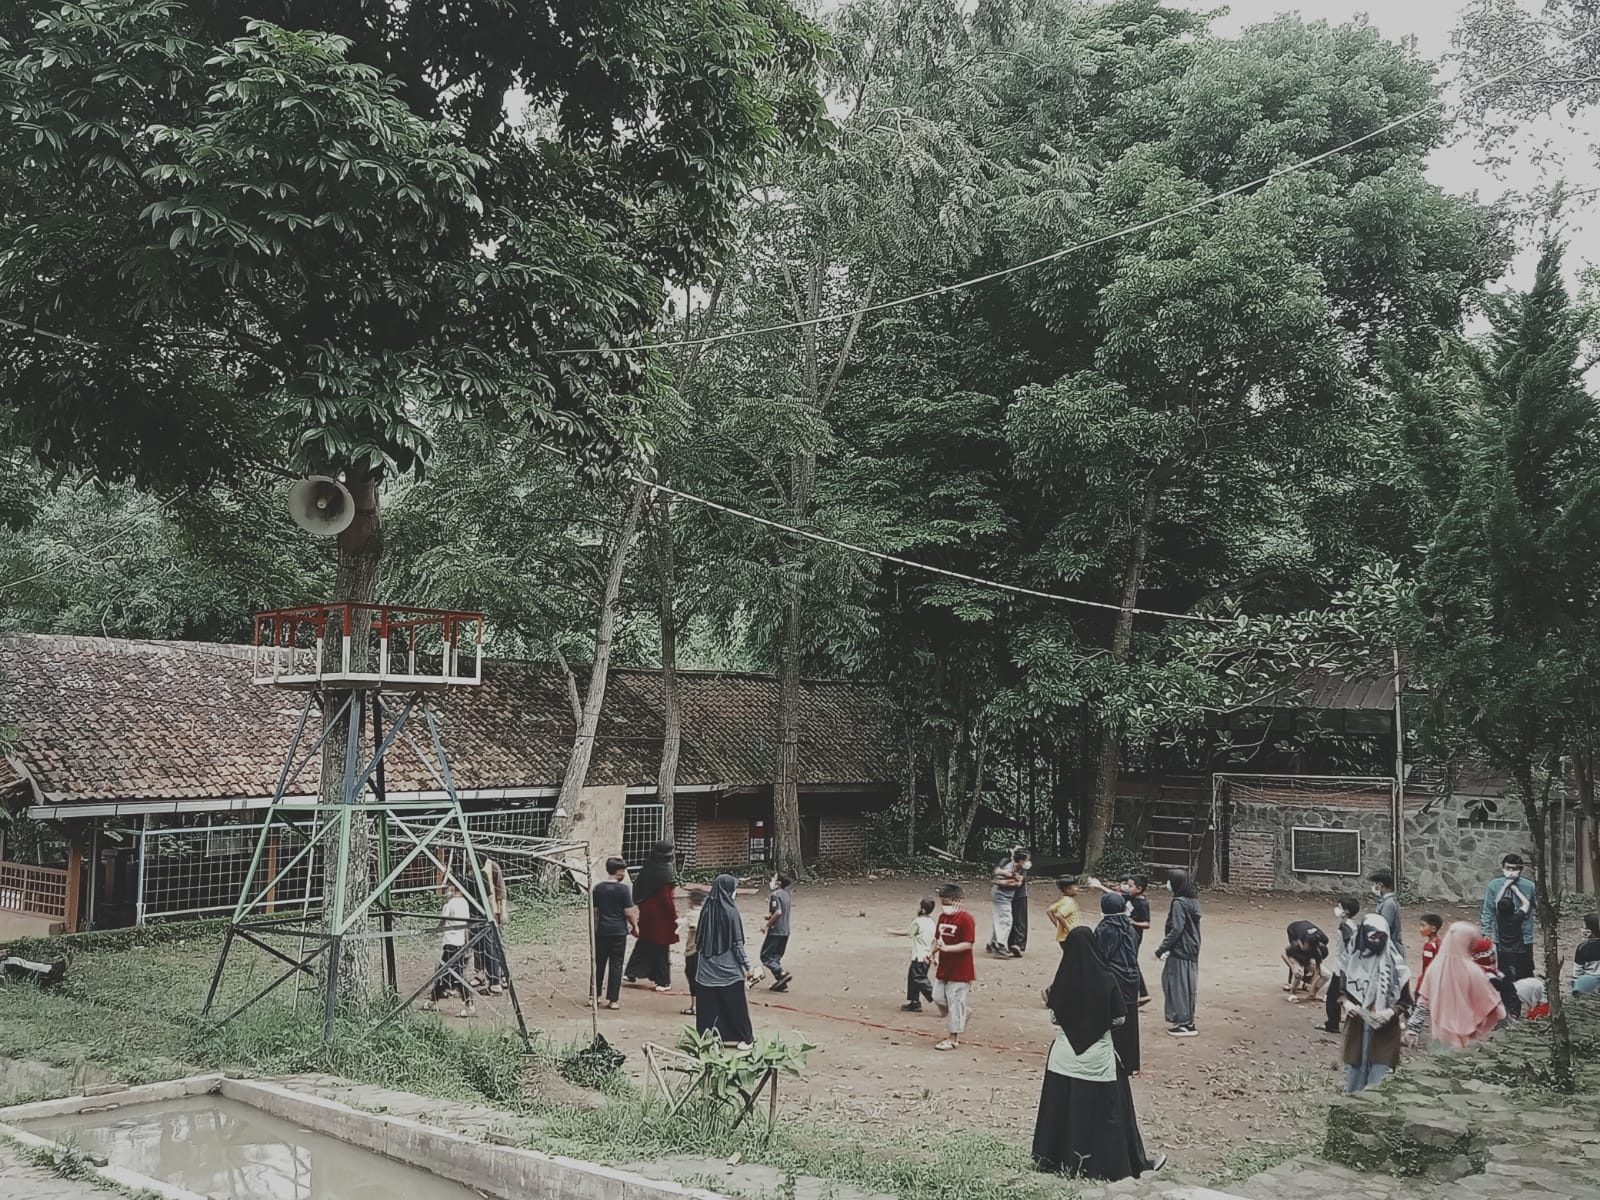 MOTO SEKOLAH: Belajar, bermain dan berpetualang menjadi sebuah kurikulum yang diterapkan di Sekolah Alam Bandung. Dimana dalam proses pembelajaran 70 persen eksplorasi alam dan 30 persen literasi.